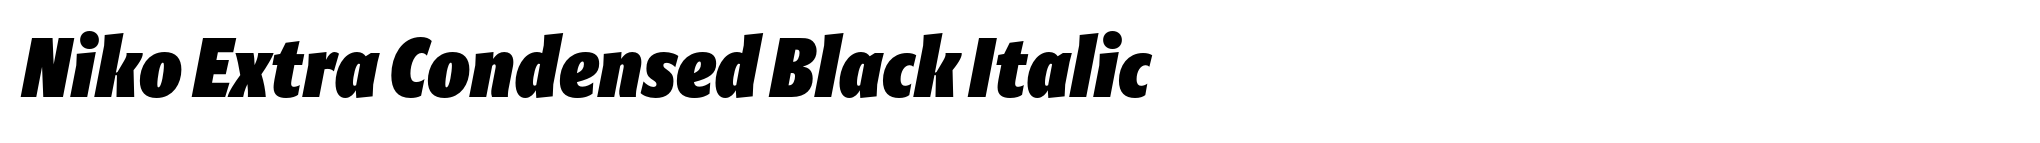 Niko Extra Condensed Black Italic image